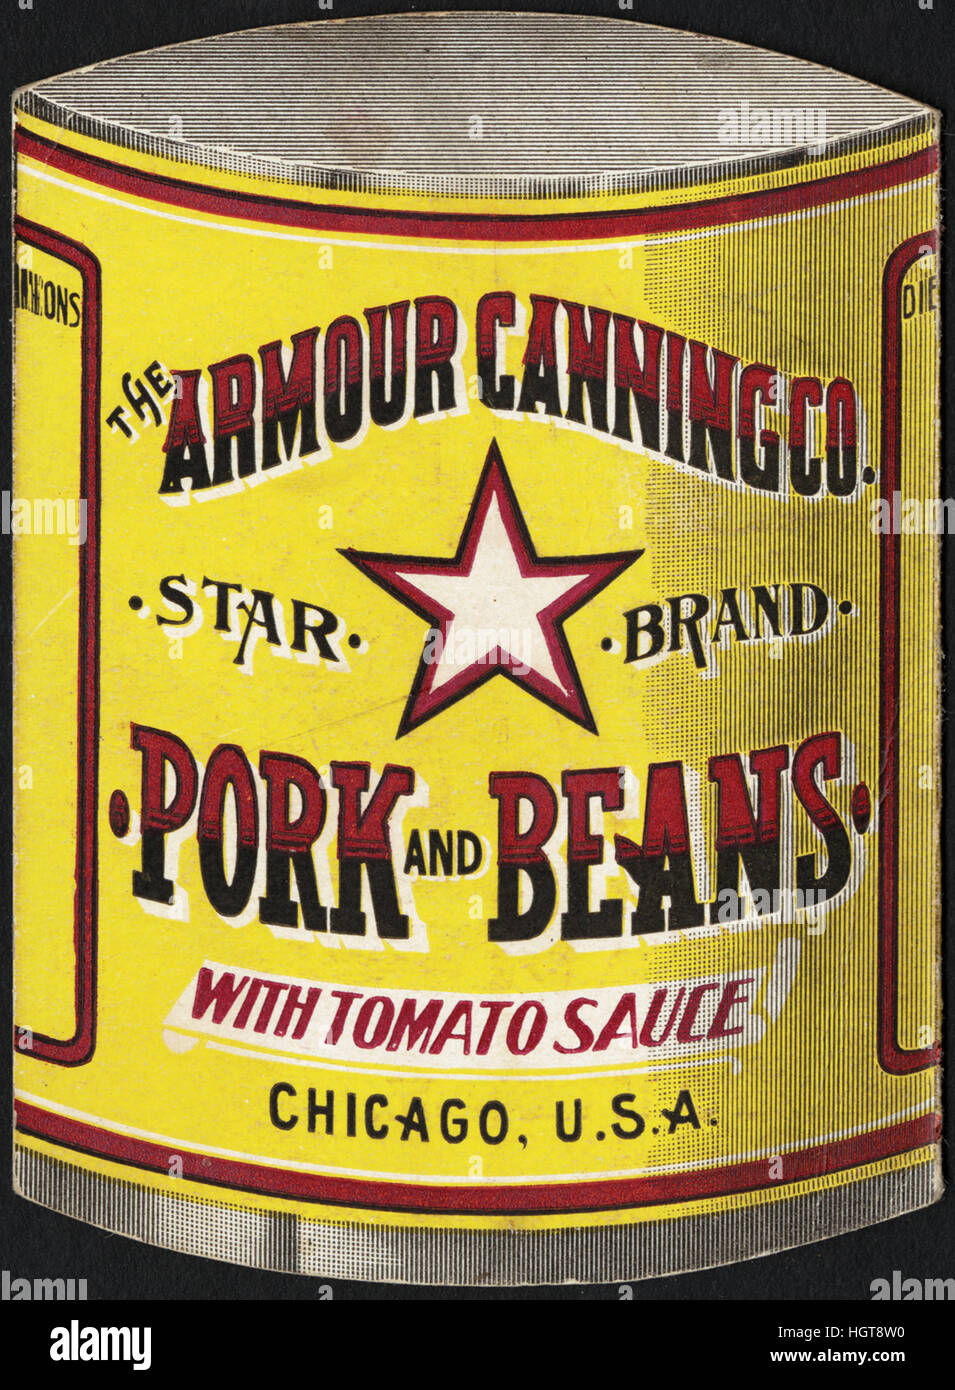 La corazza Canning Co. La carne di maiale e i fagioli con la salsa di pomodoro. Chicago, U. S. A. [back] - Il commercio di generi alimentari Card Foto Stock